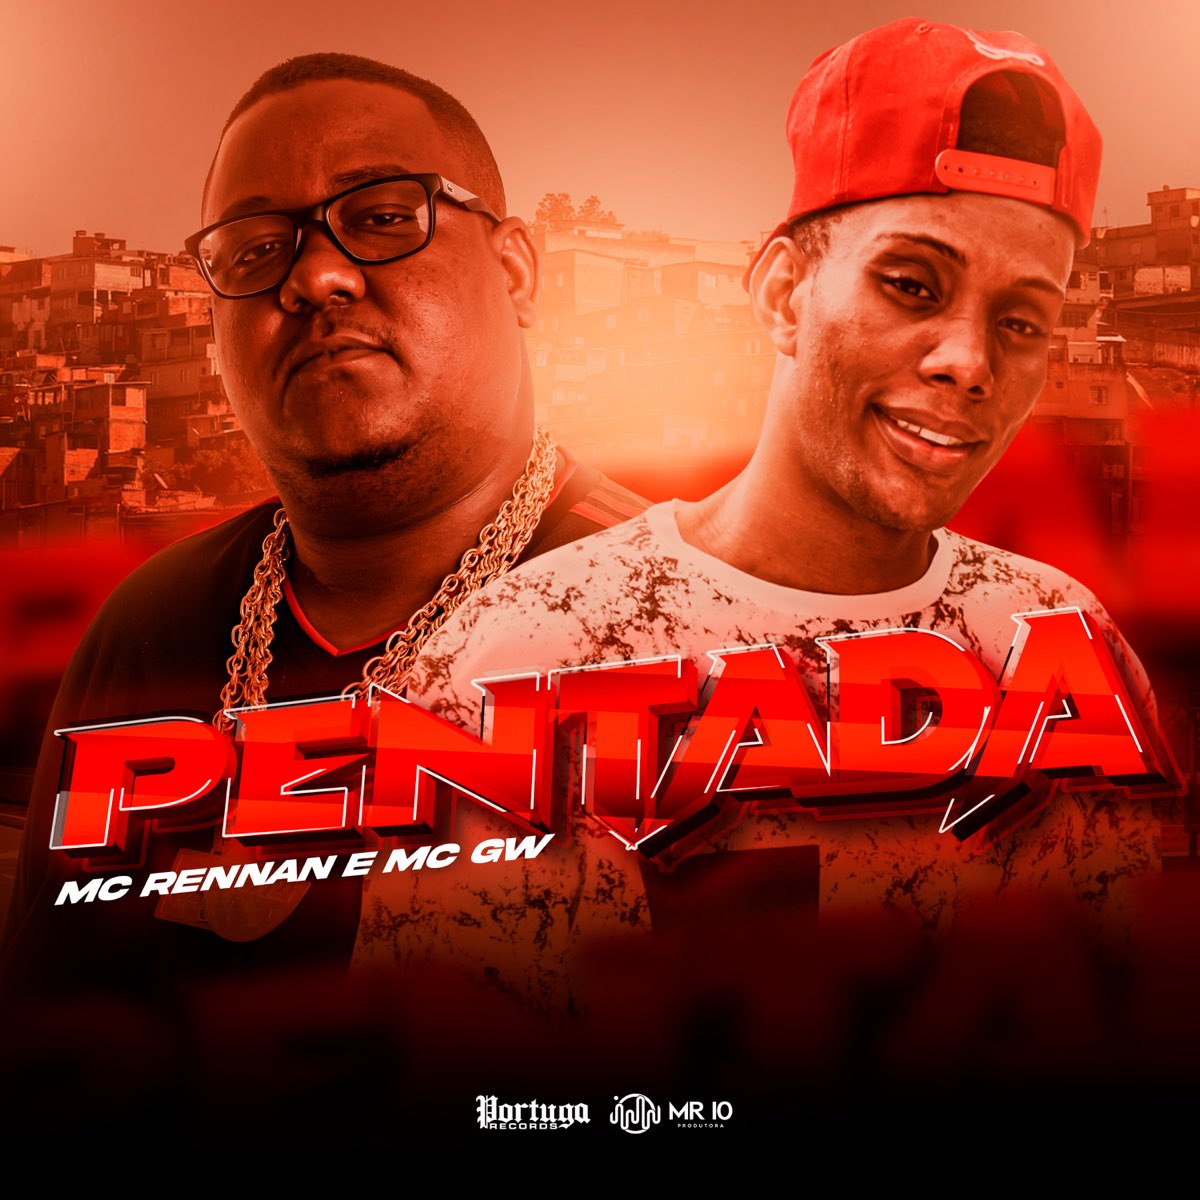 Baforando Lança - Single — álbum de MC Bené Do Ara & Dj LD de Realengo —  Apple Music